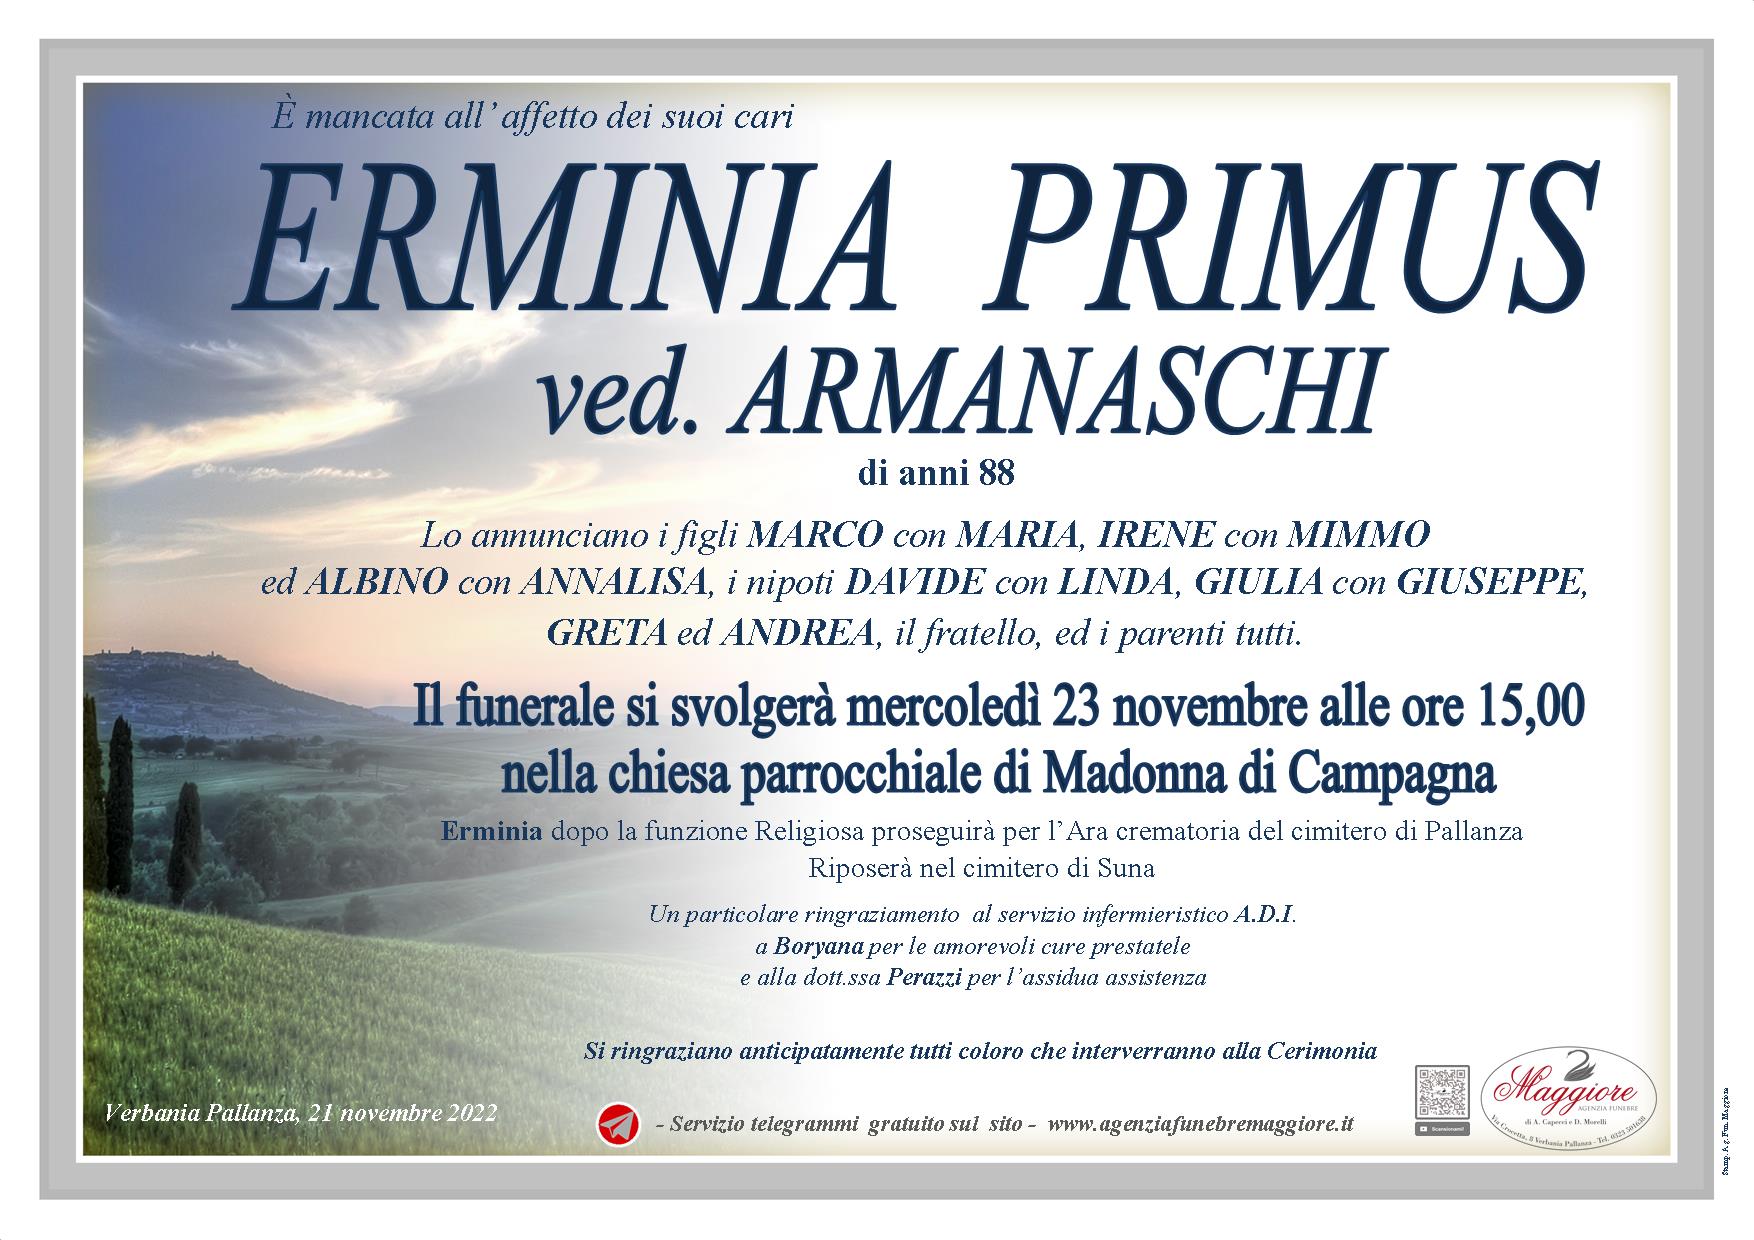 Erminia Primus ved. Armanaschi